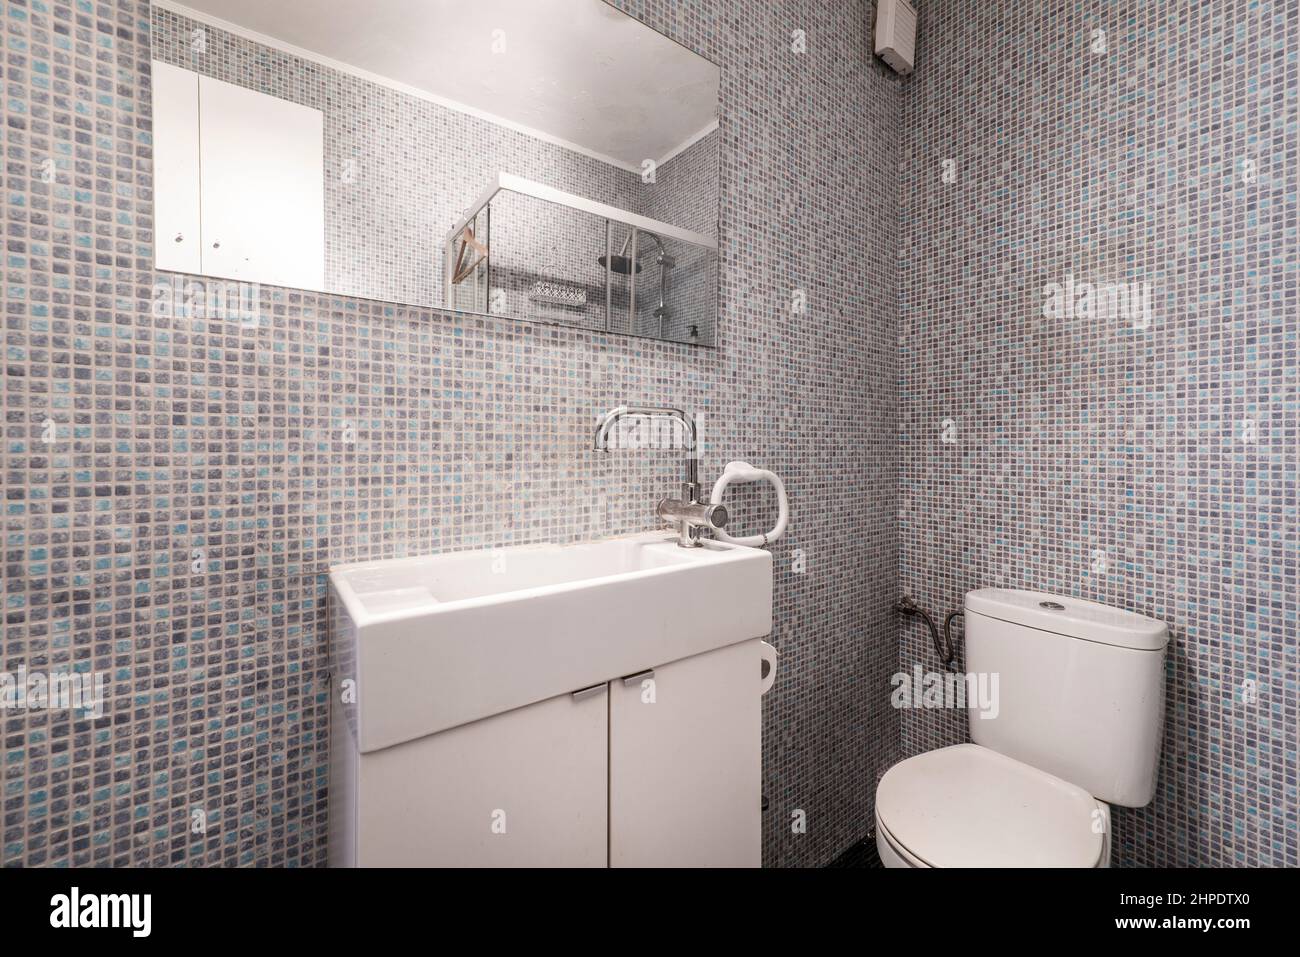 Salle de bains avec évier en porcelaine blanche, miroir mural rectangulaire et carreaux de mosaïque gris et bleu Banque D'Images